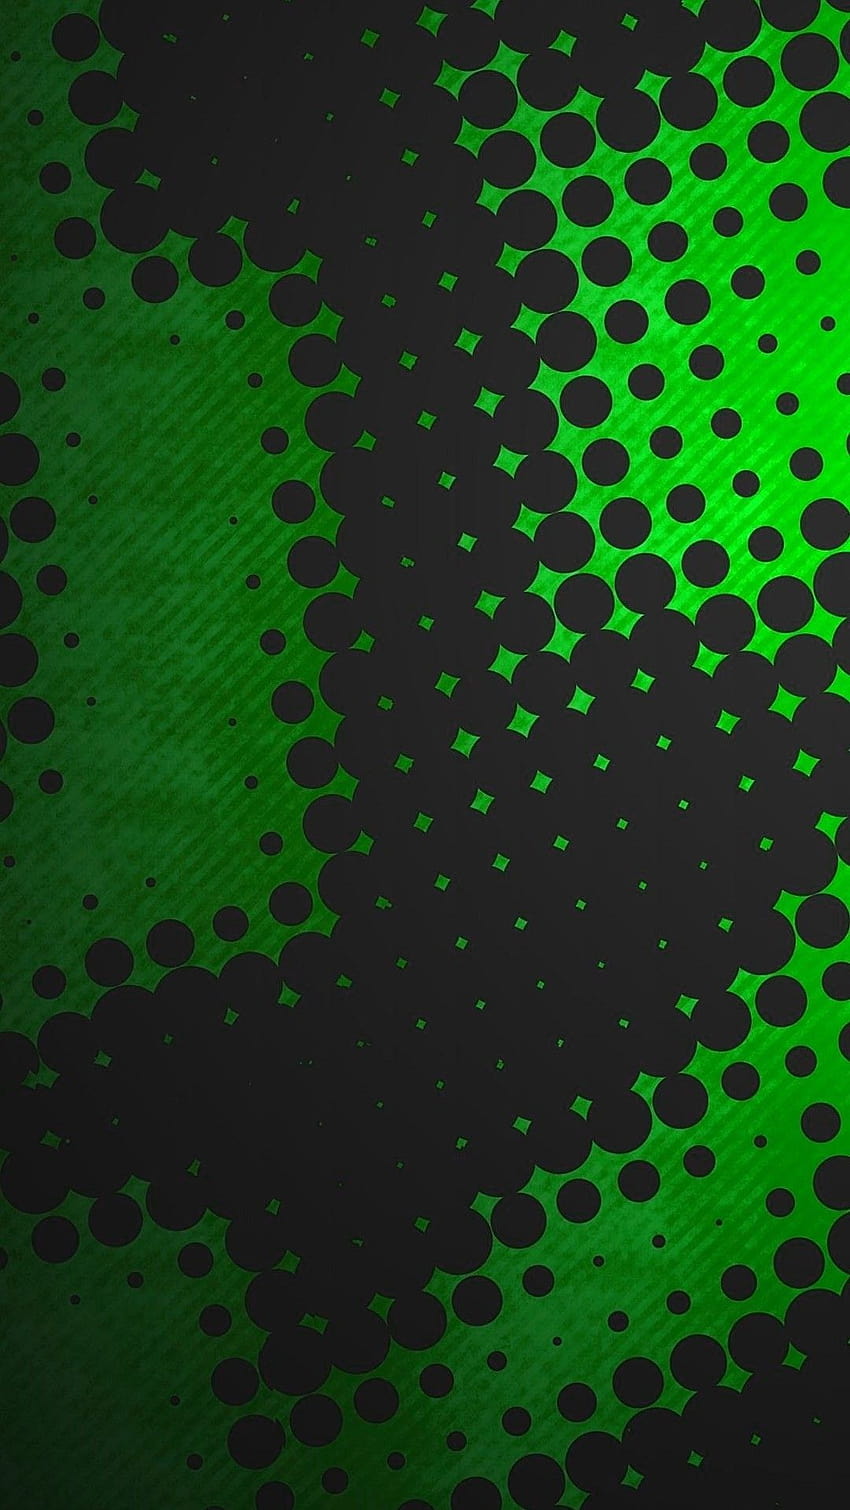 AMOLED Abstract, green amoled HD phone wallpaper